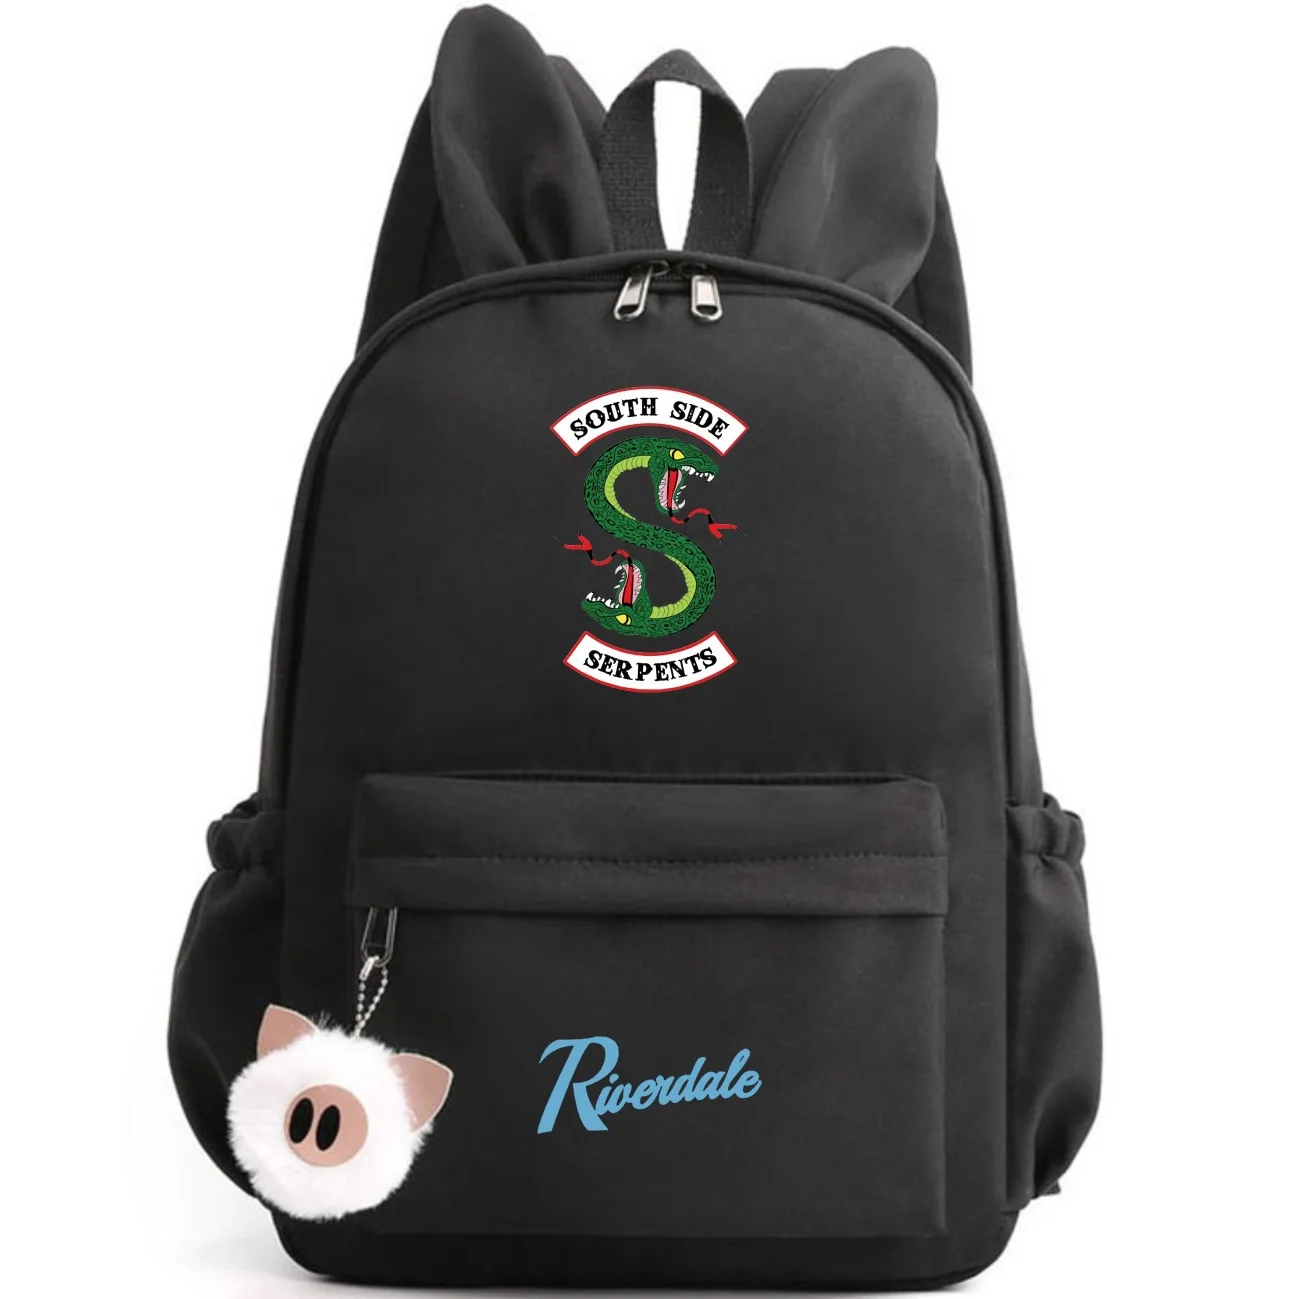 "South Side serpents" ривердейл рюкзак с заячьими ушками милые модные сумки ривердейл Тетрадь, холщовые сумки, школьные сумки для подростков, для мальчиков и девочек - Цвет: style  6